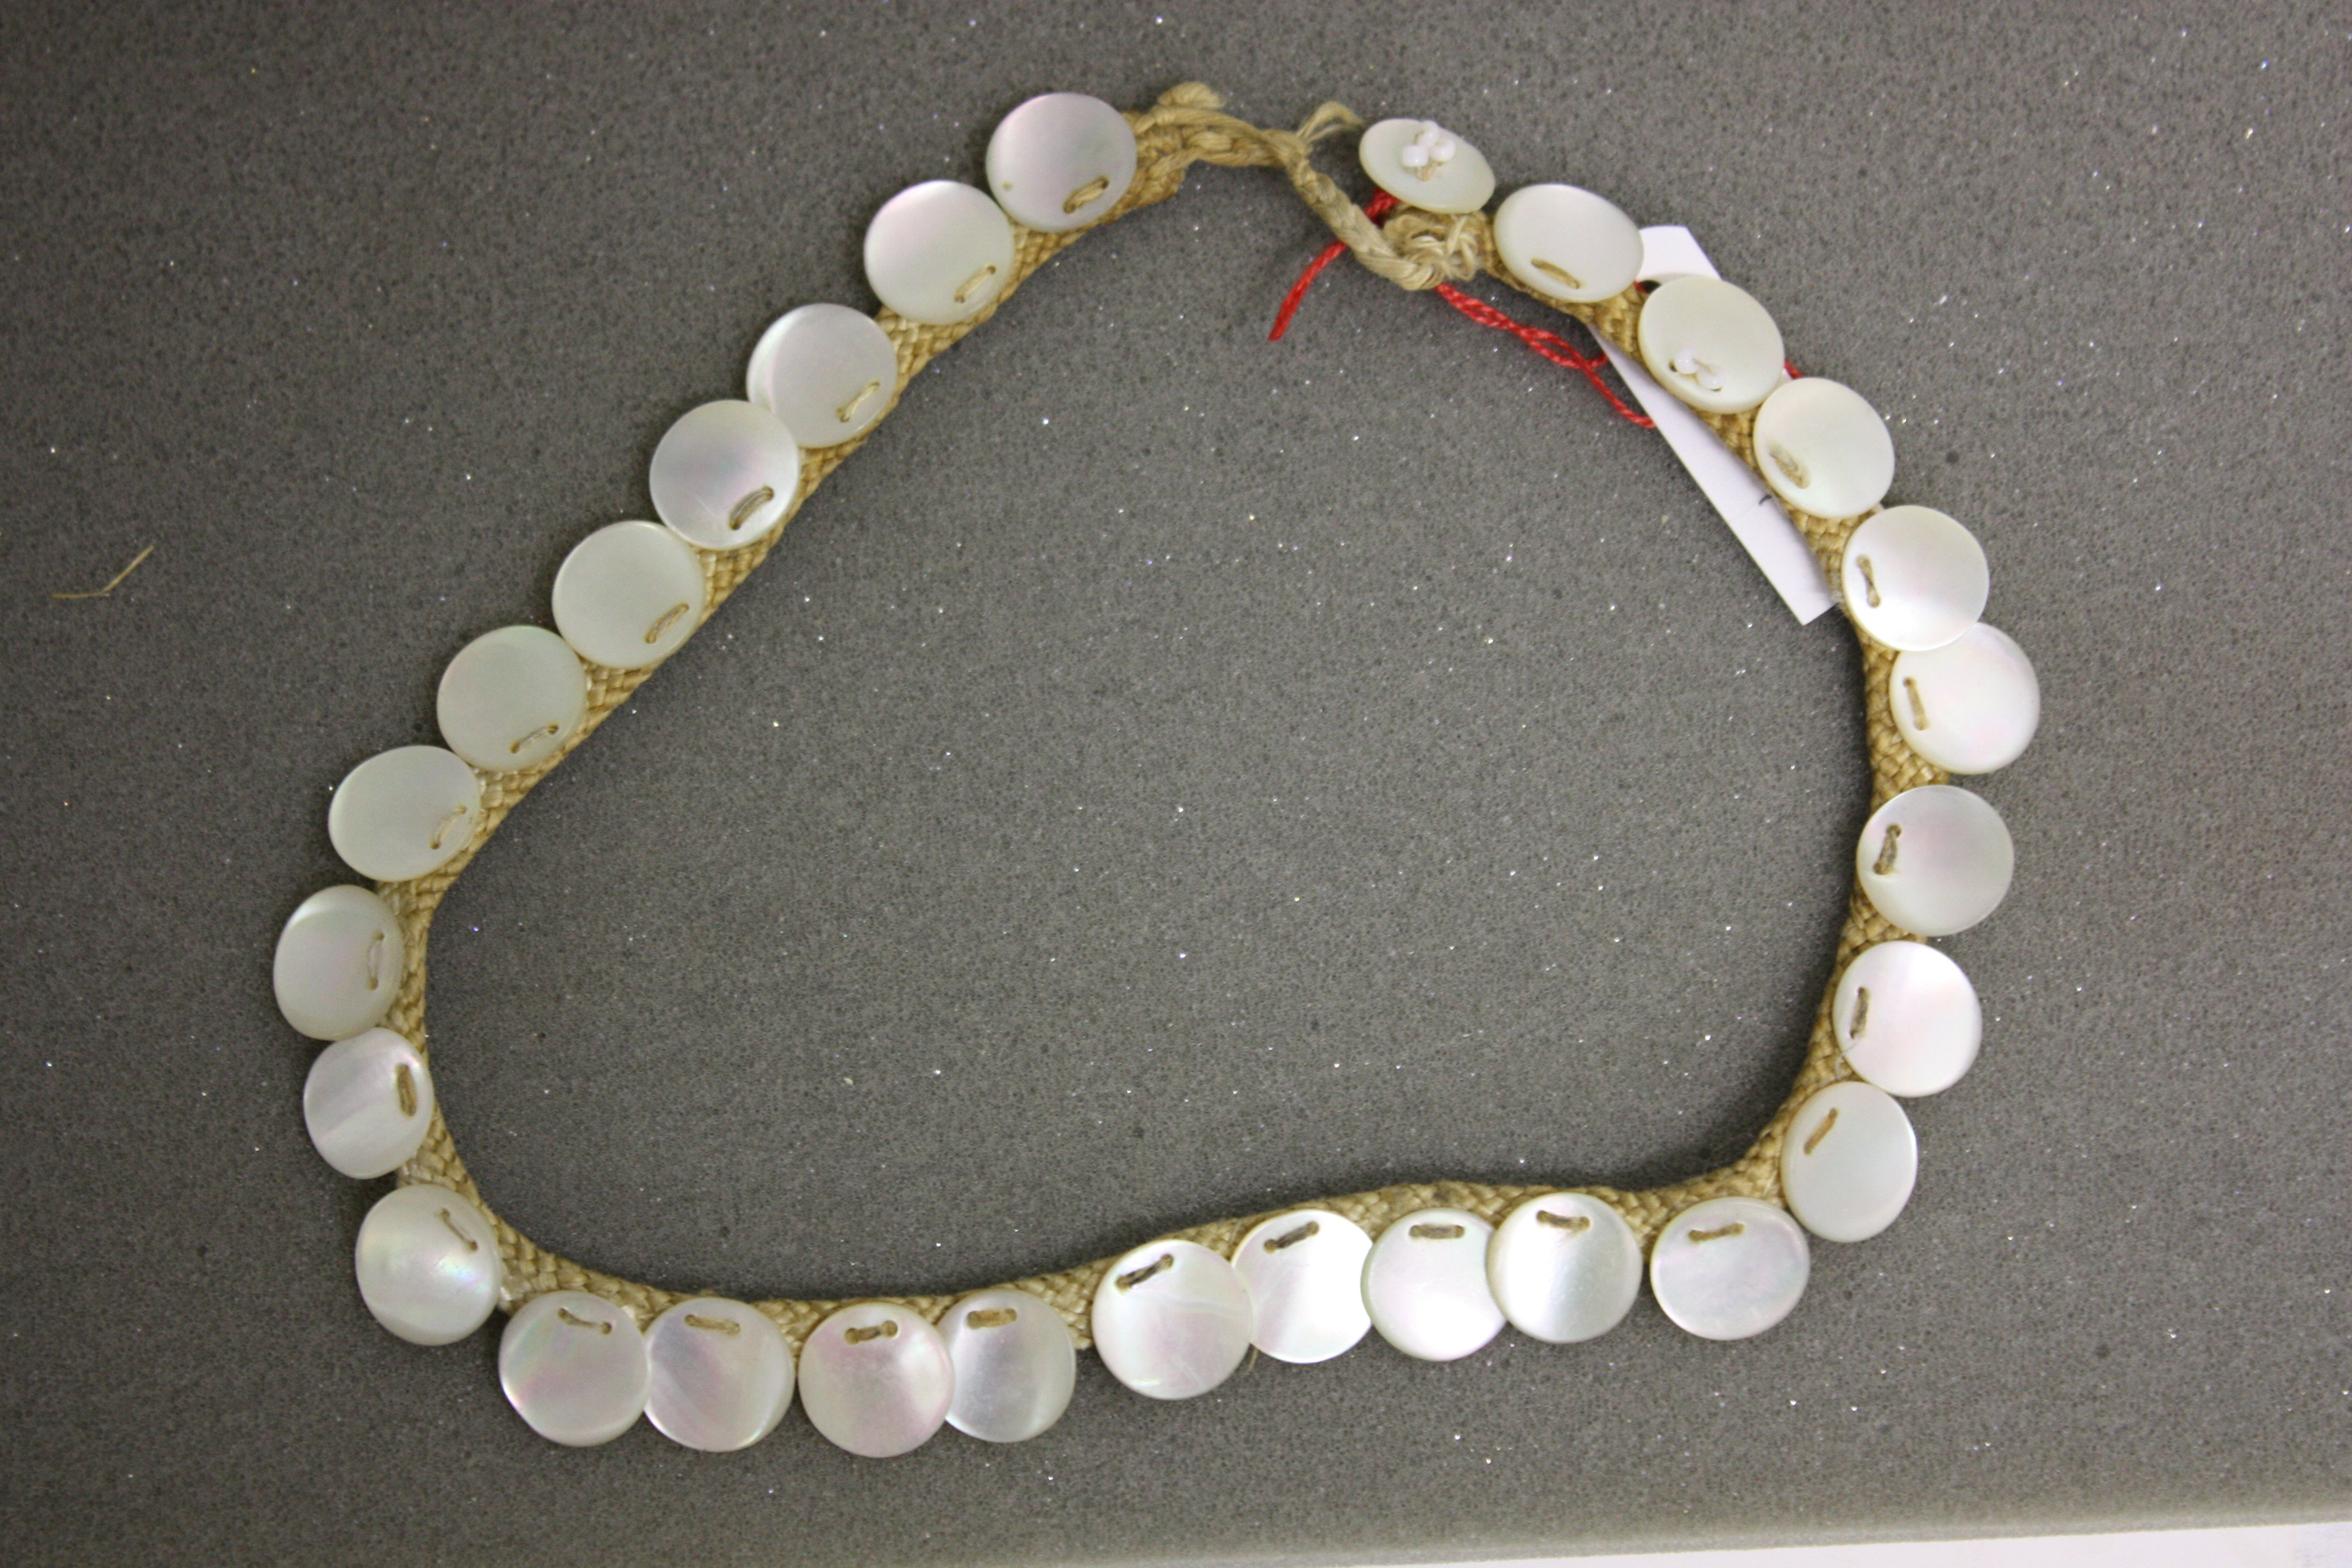 Halskette (Museum für Sepulkralkultur CC0)